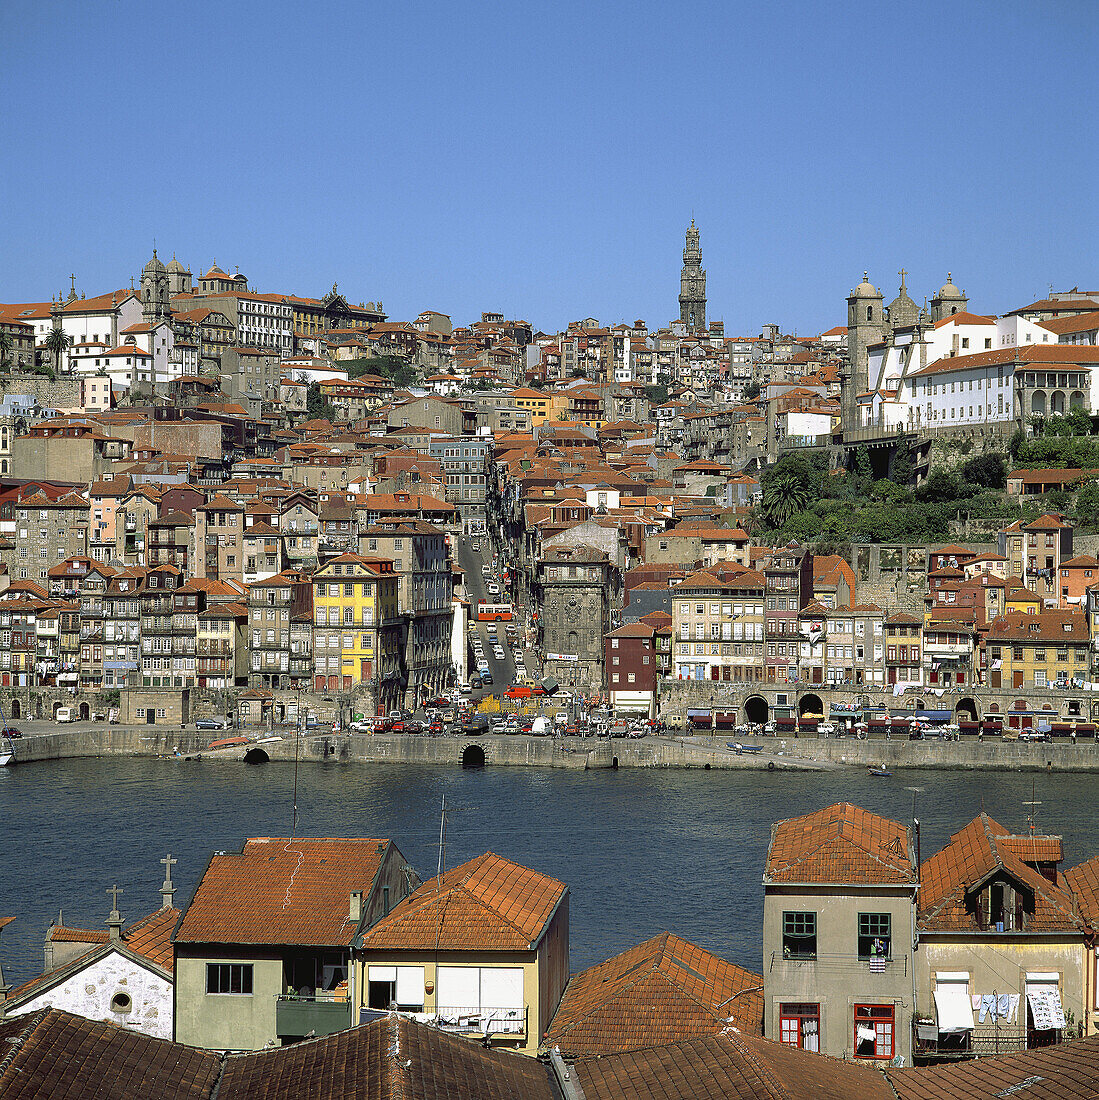 Vila Nova de Gaia and Douro river with Porto town skyline. Portugal.